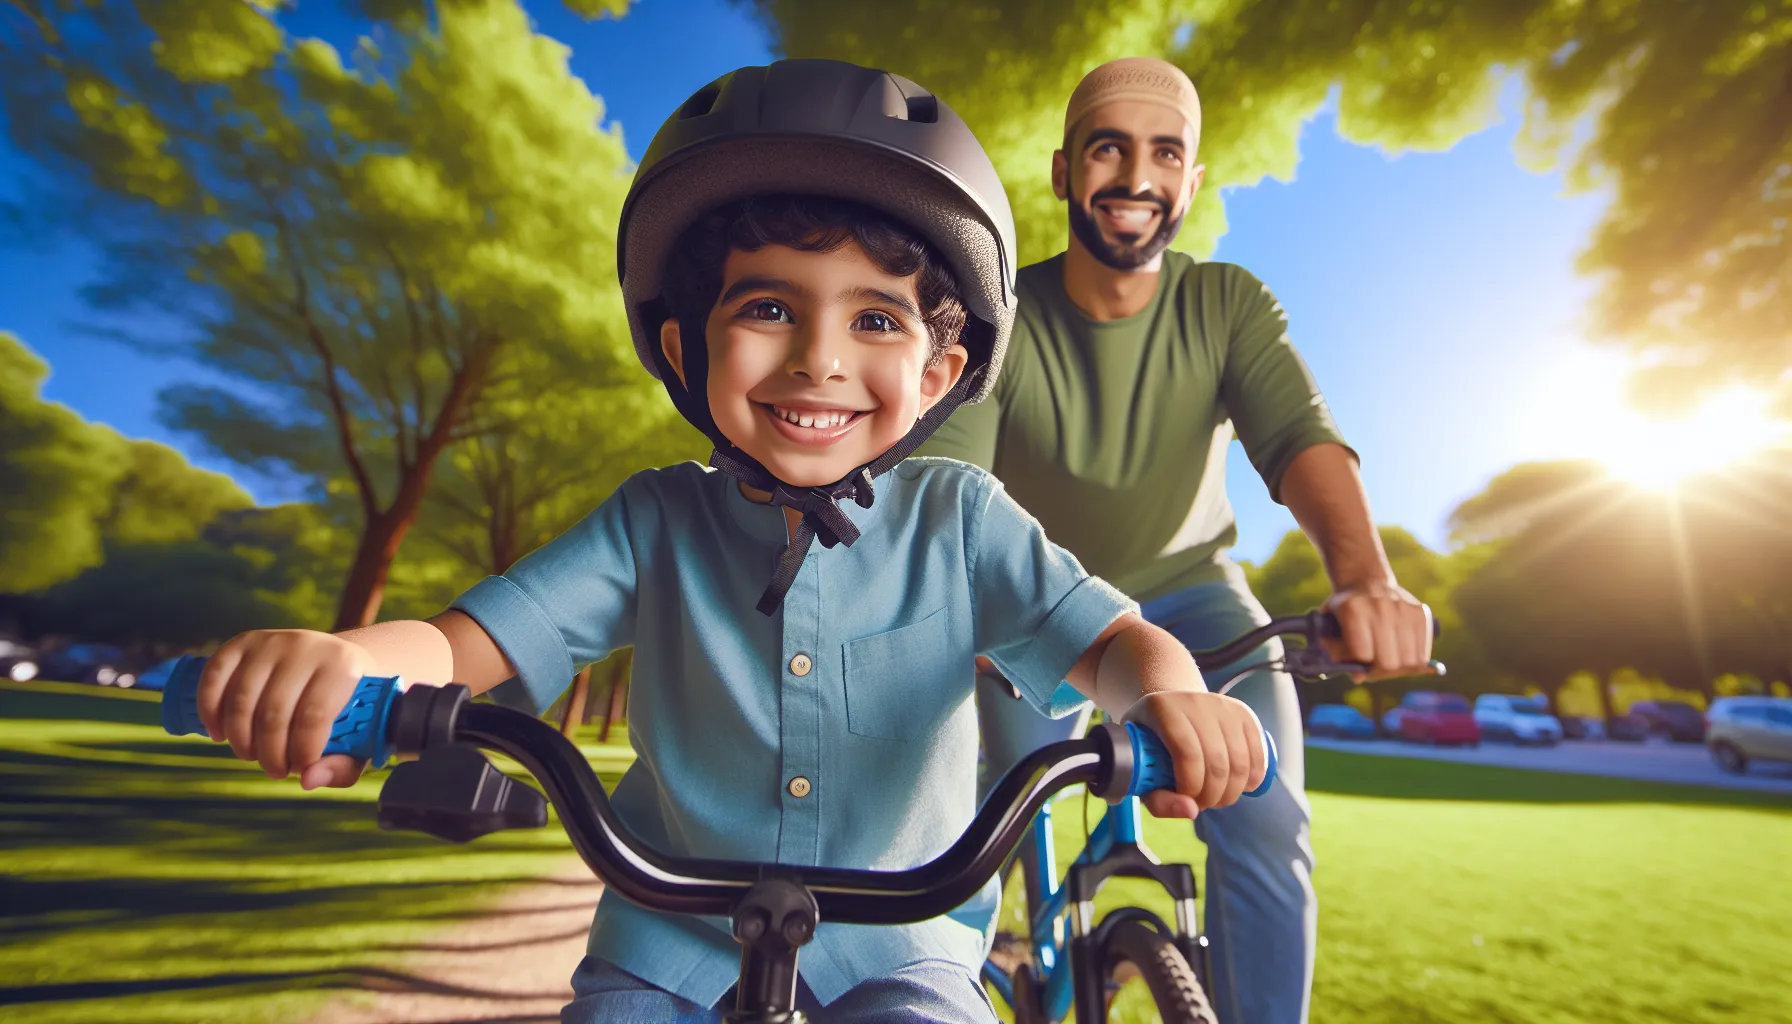 Incentivar seu filho a andar de bicicleta pode ser uma ótima maneira de promover um estilo de vida ativo e saudável. Aqui estão algumas dicas para ajudar você a motivar seu filho a pedalar:

1. Compre uma bicicleta adequada: Certifique-se de que a bicicleta seja do tamanho certo para o seu filho. Uma bicicleta muito grande ou muito pequena pode dificultar o aprendizado e